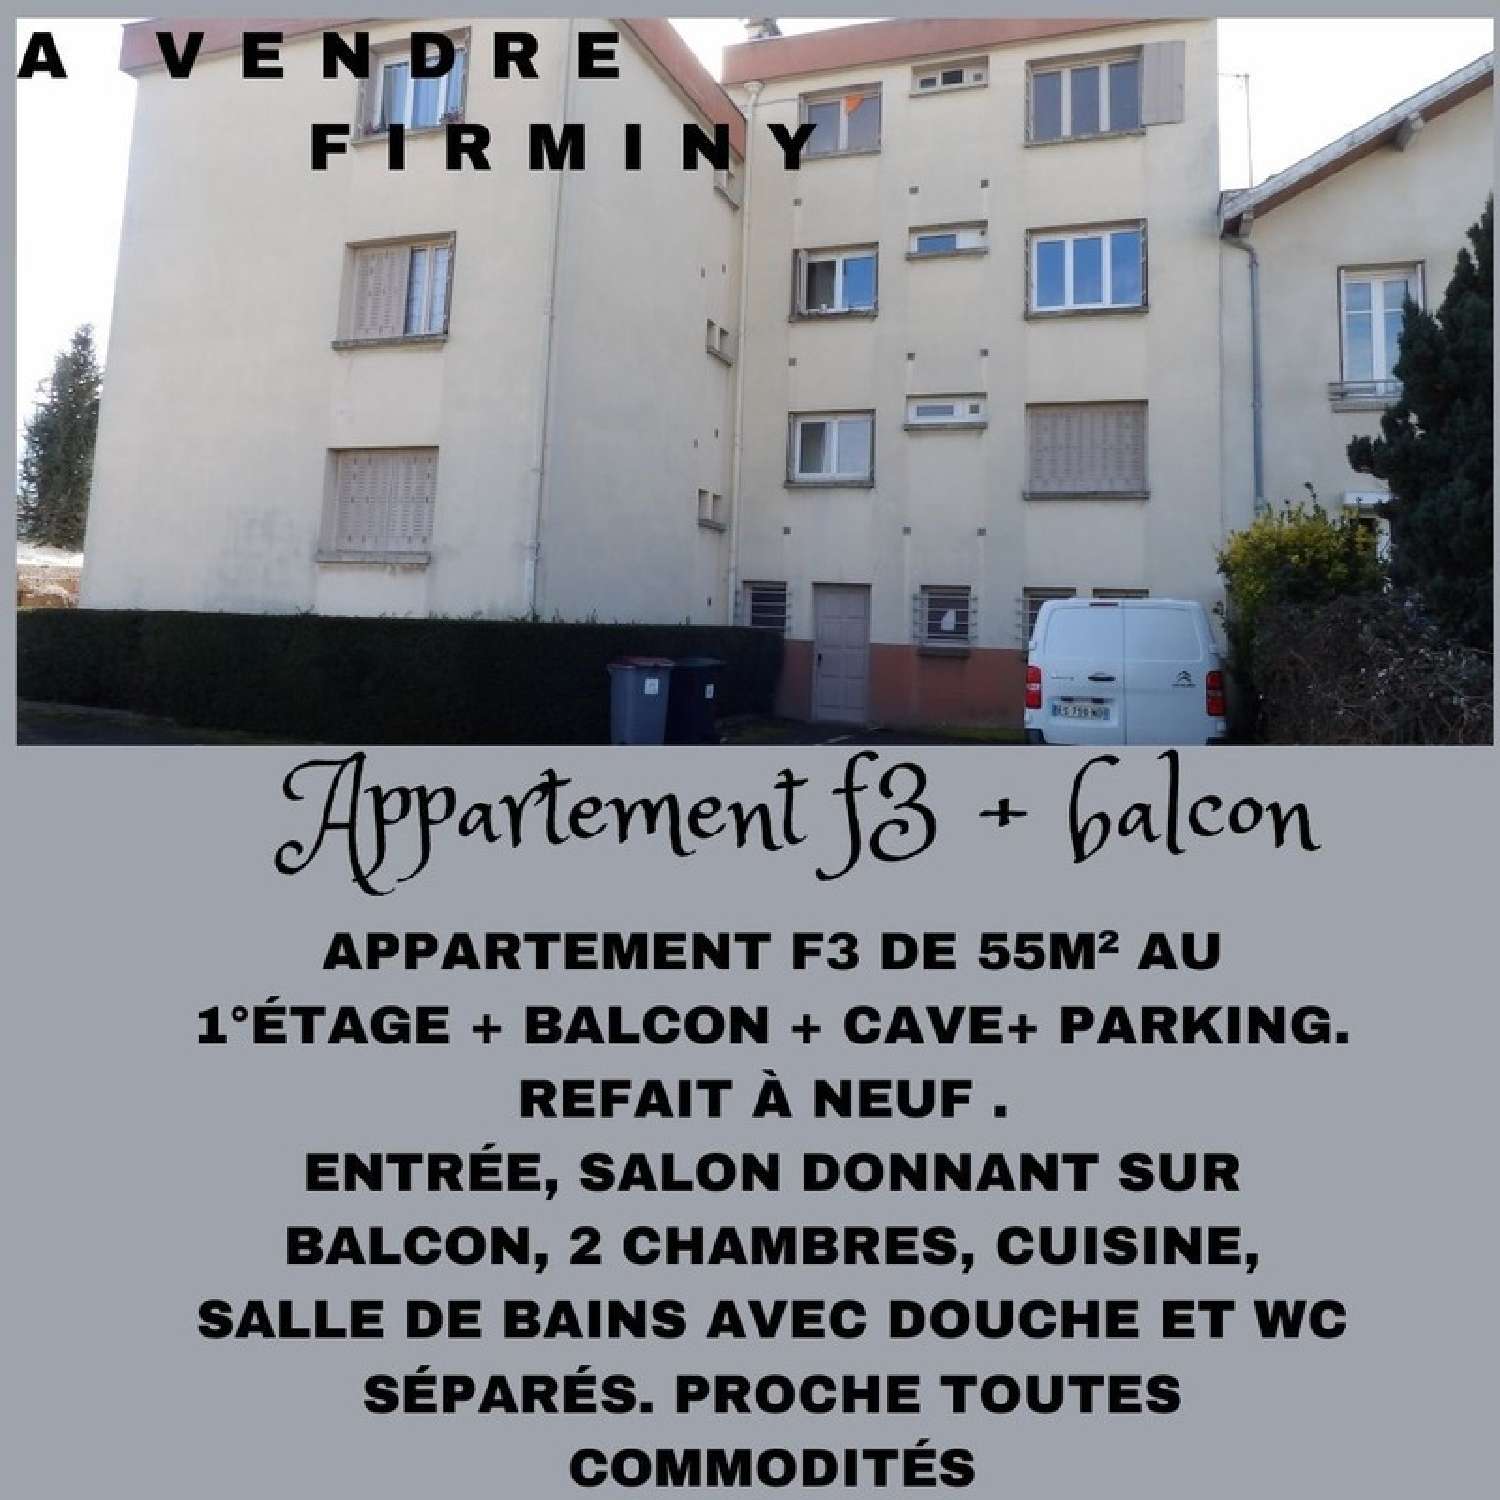  à vendre appartement Firminy Loire 1